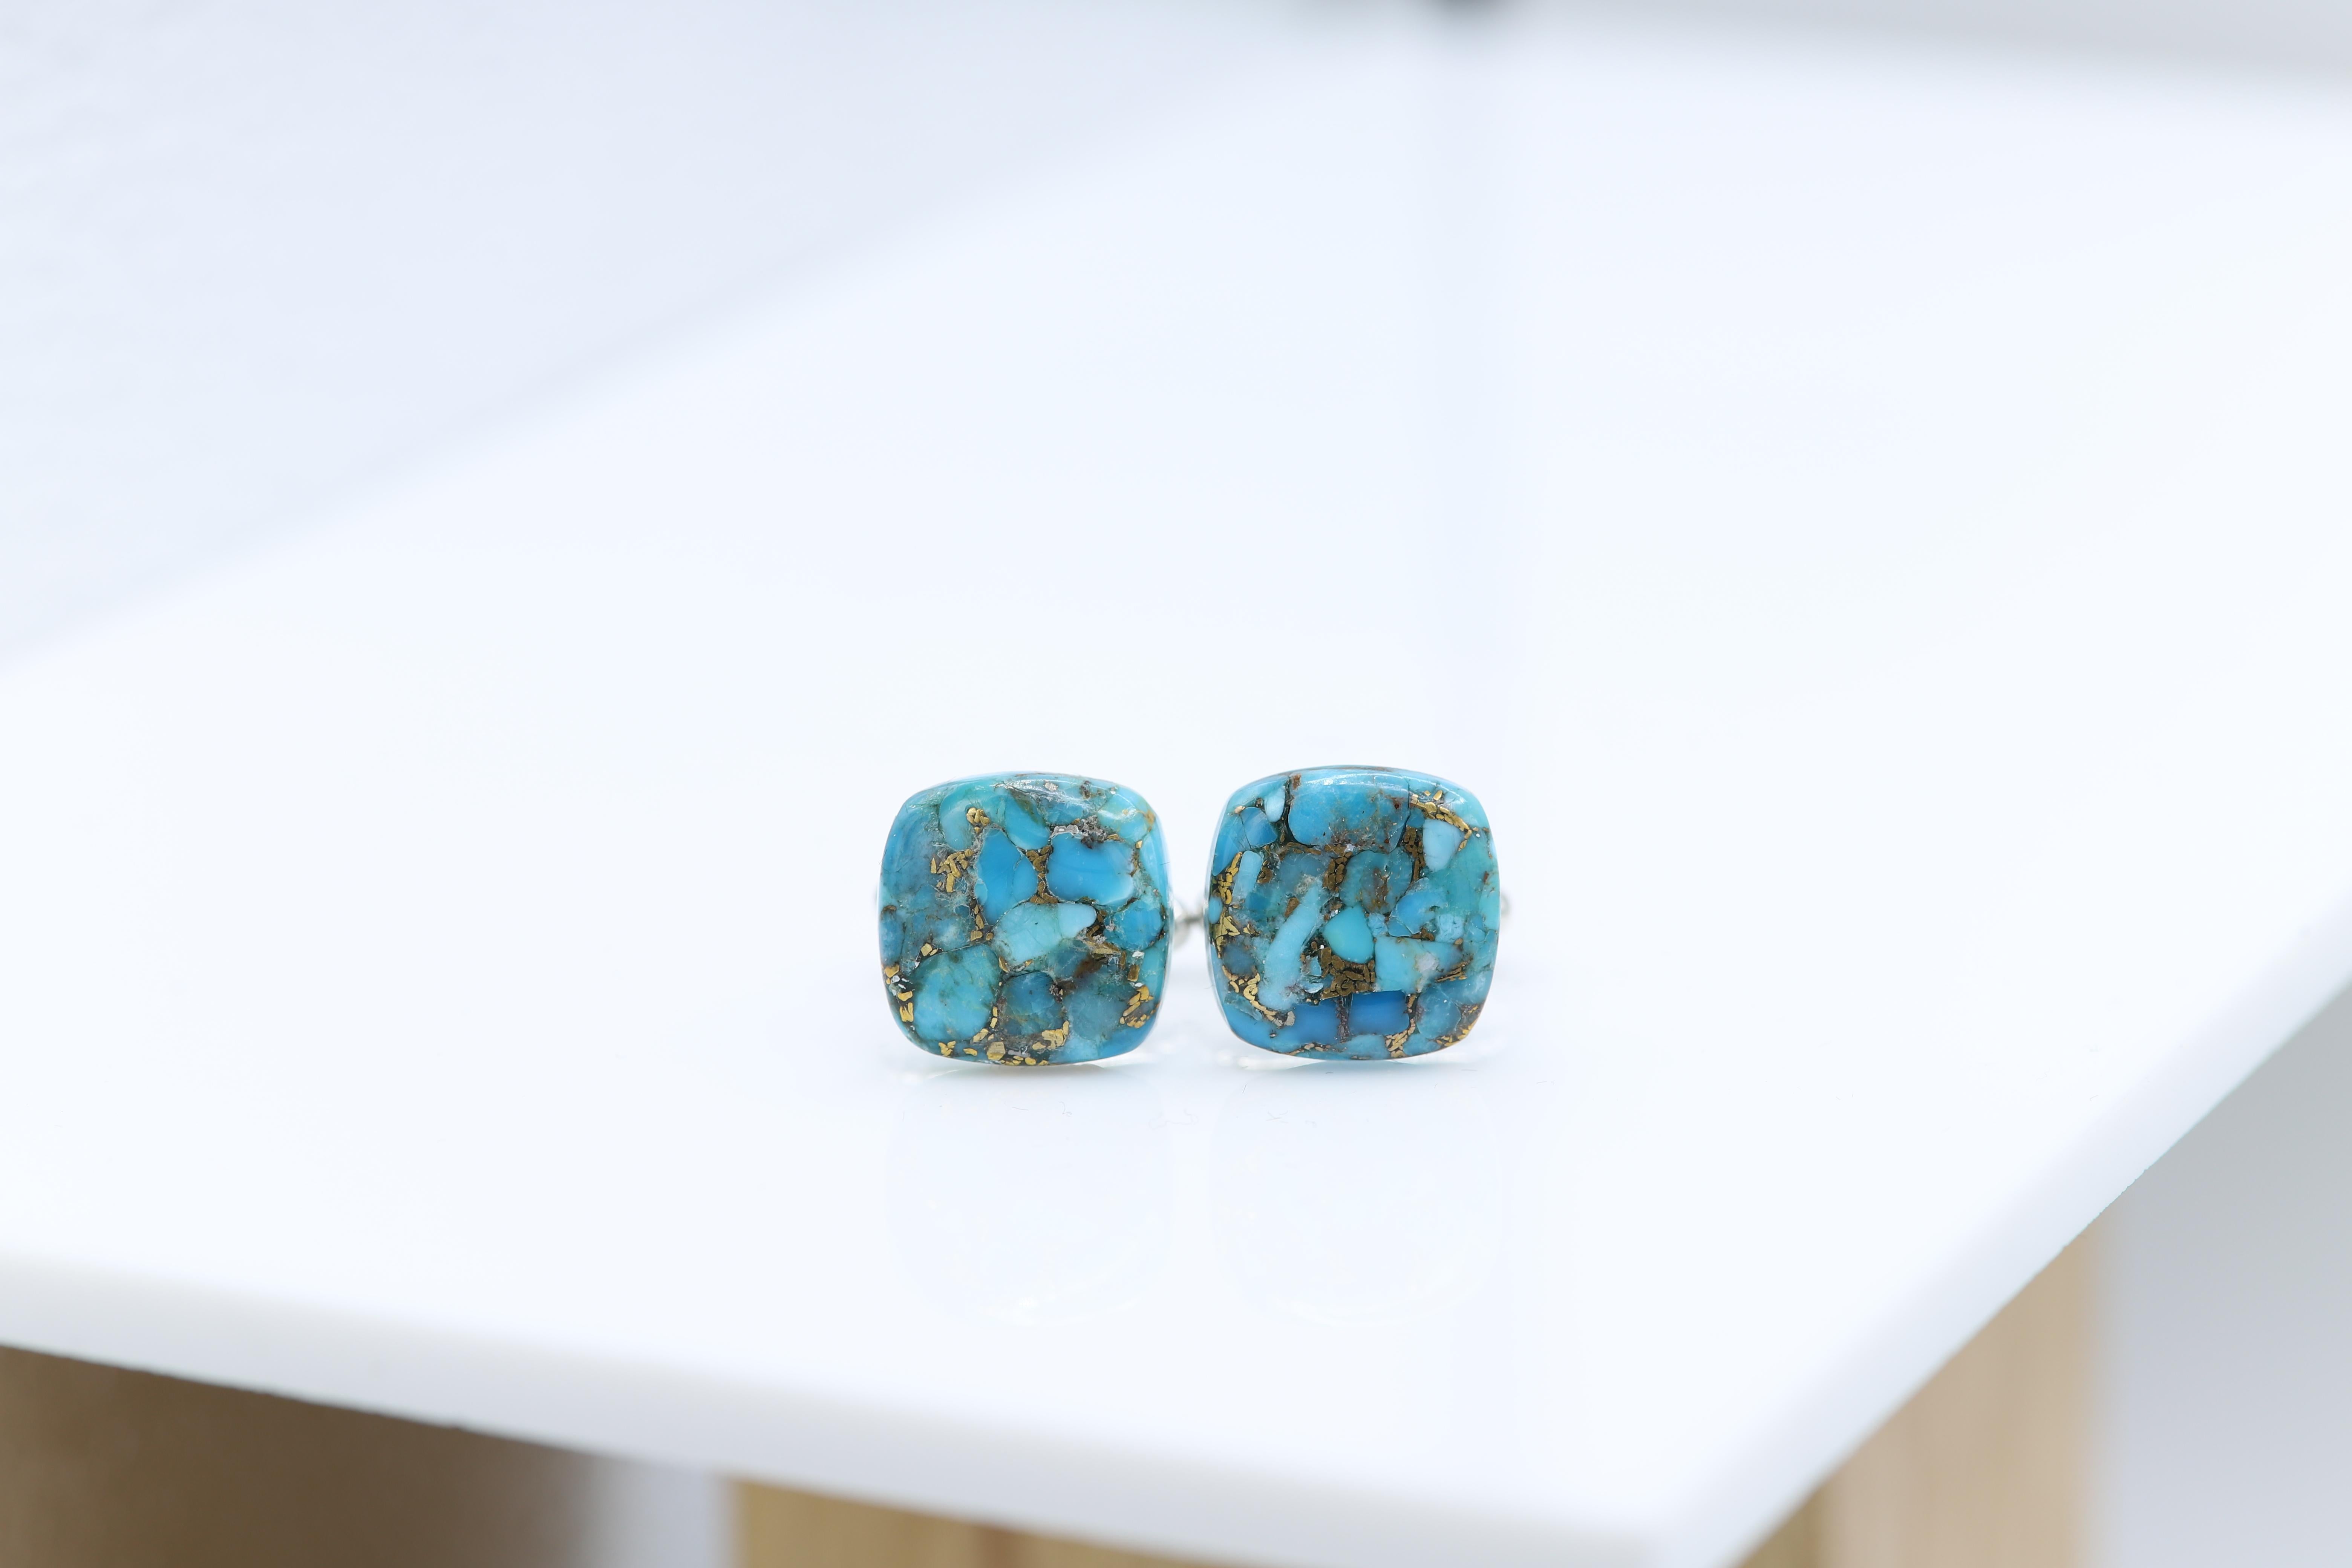 Nouveau bouton de manchette unique pour hommes - pierre naturelle.
Nom de la pierre : « Blue Copper Turquoise » (reconstructié)
Taille approximative 16 mm (square)
Magnifique texture naturelle.
L'imperfection peut exister en raison de formations